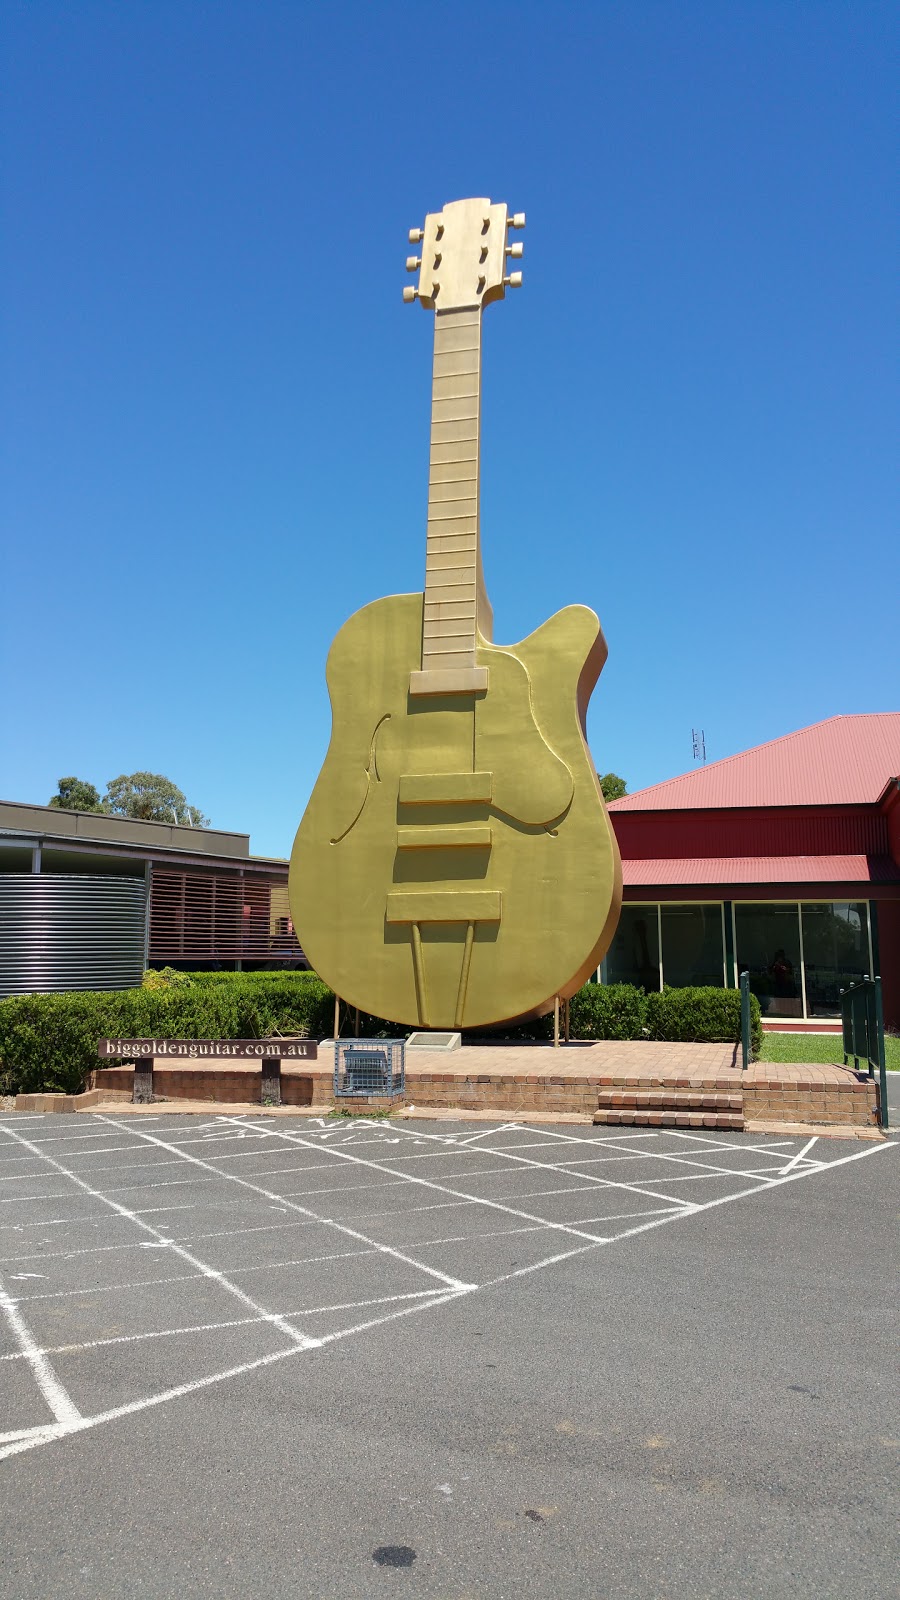 Golden Guitar Motor Inn | lodging | 2-8 The Ringers Rd, East Tamworth NSW 2340, Australia | 0267622999 OR +61 2 6762 2999